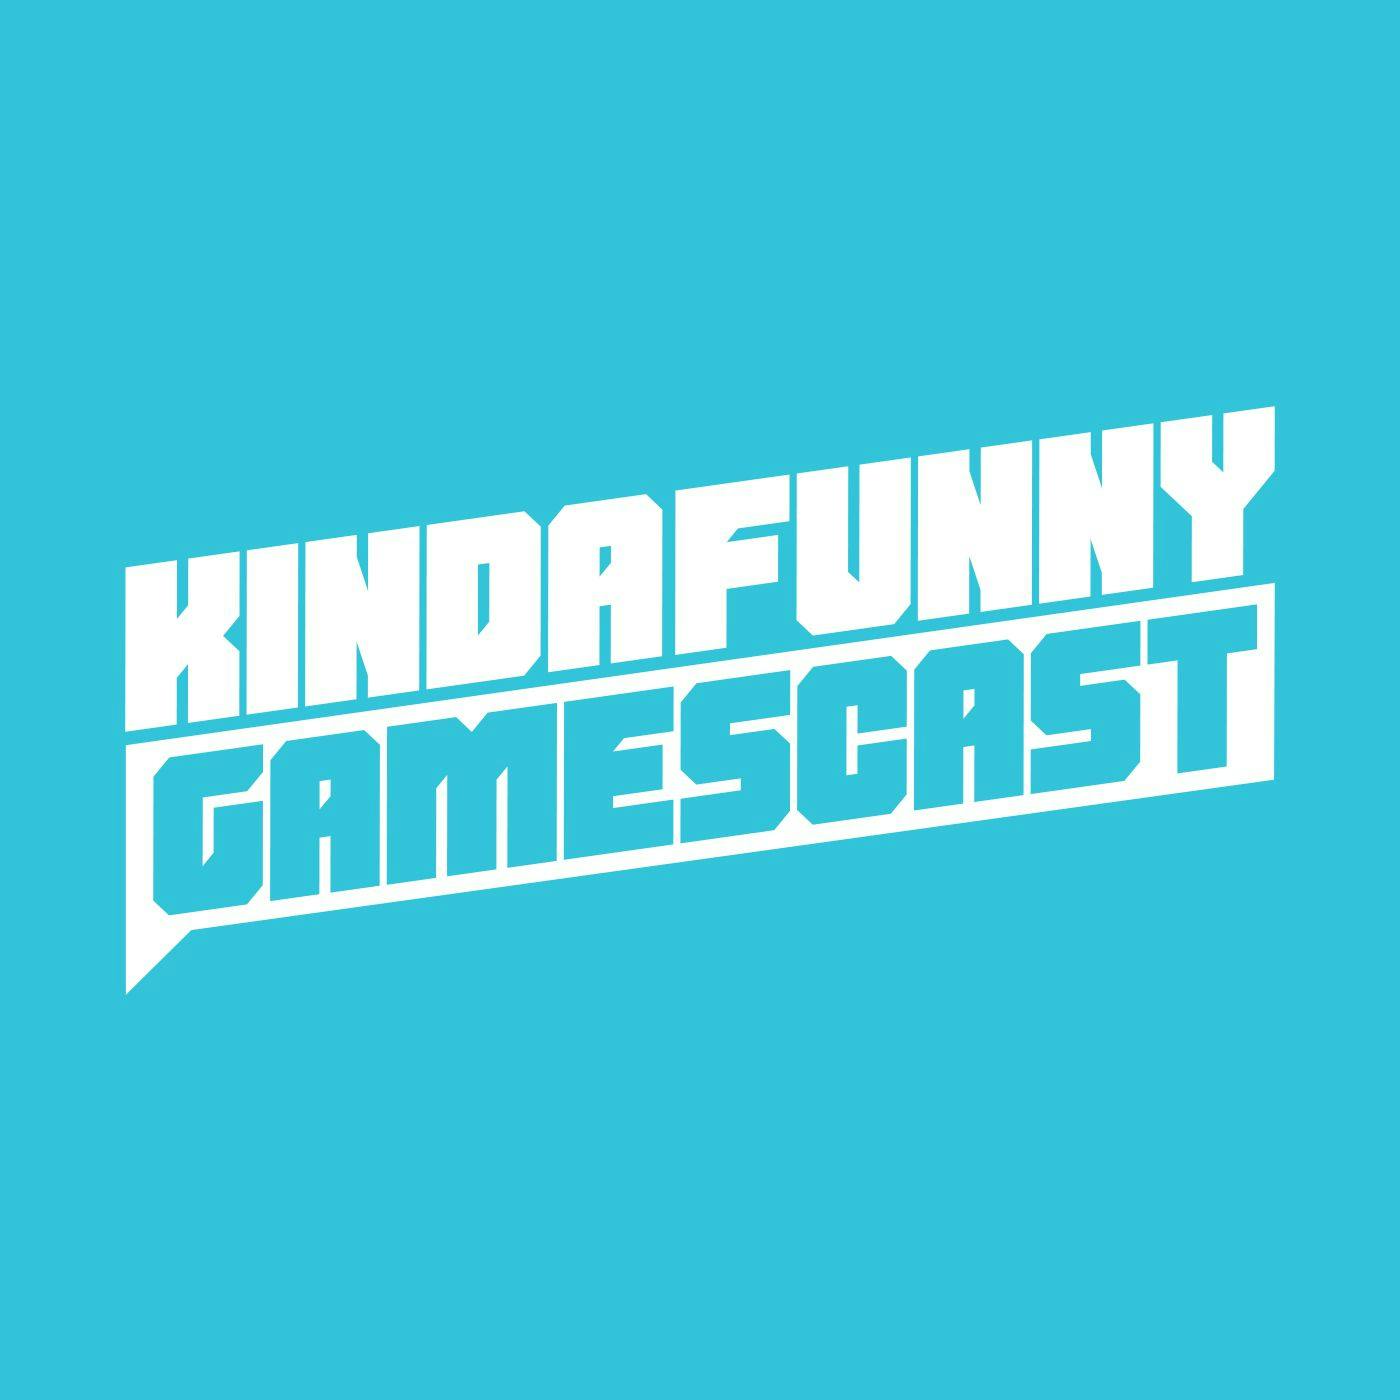 Xbox E3 2019 Review - Kinda Funny Gamescast